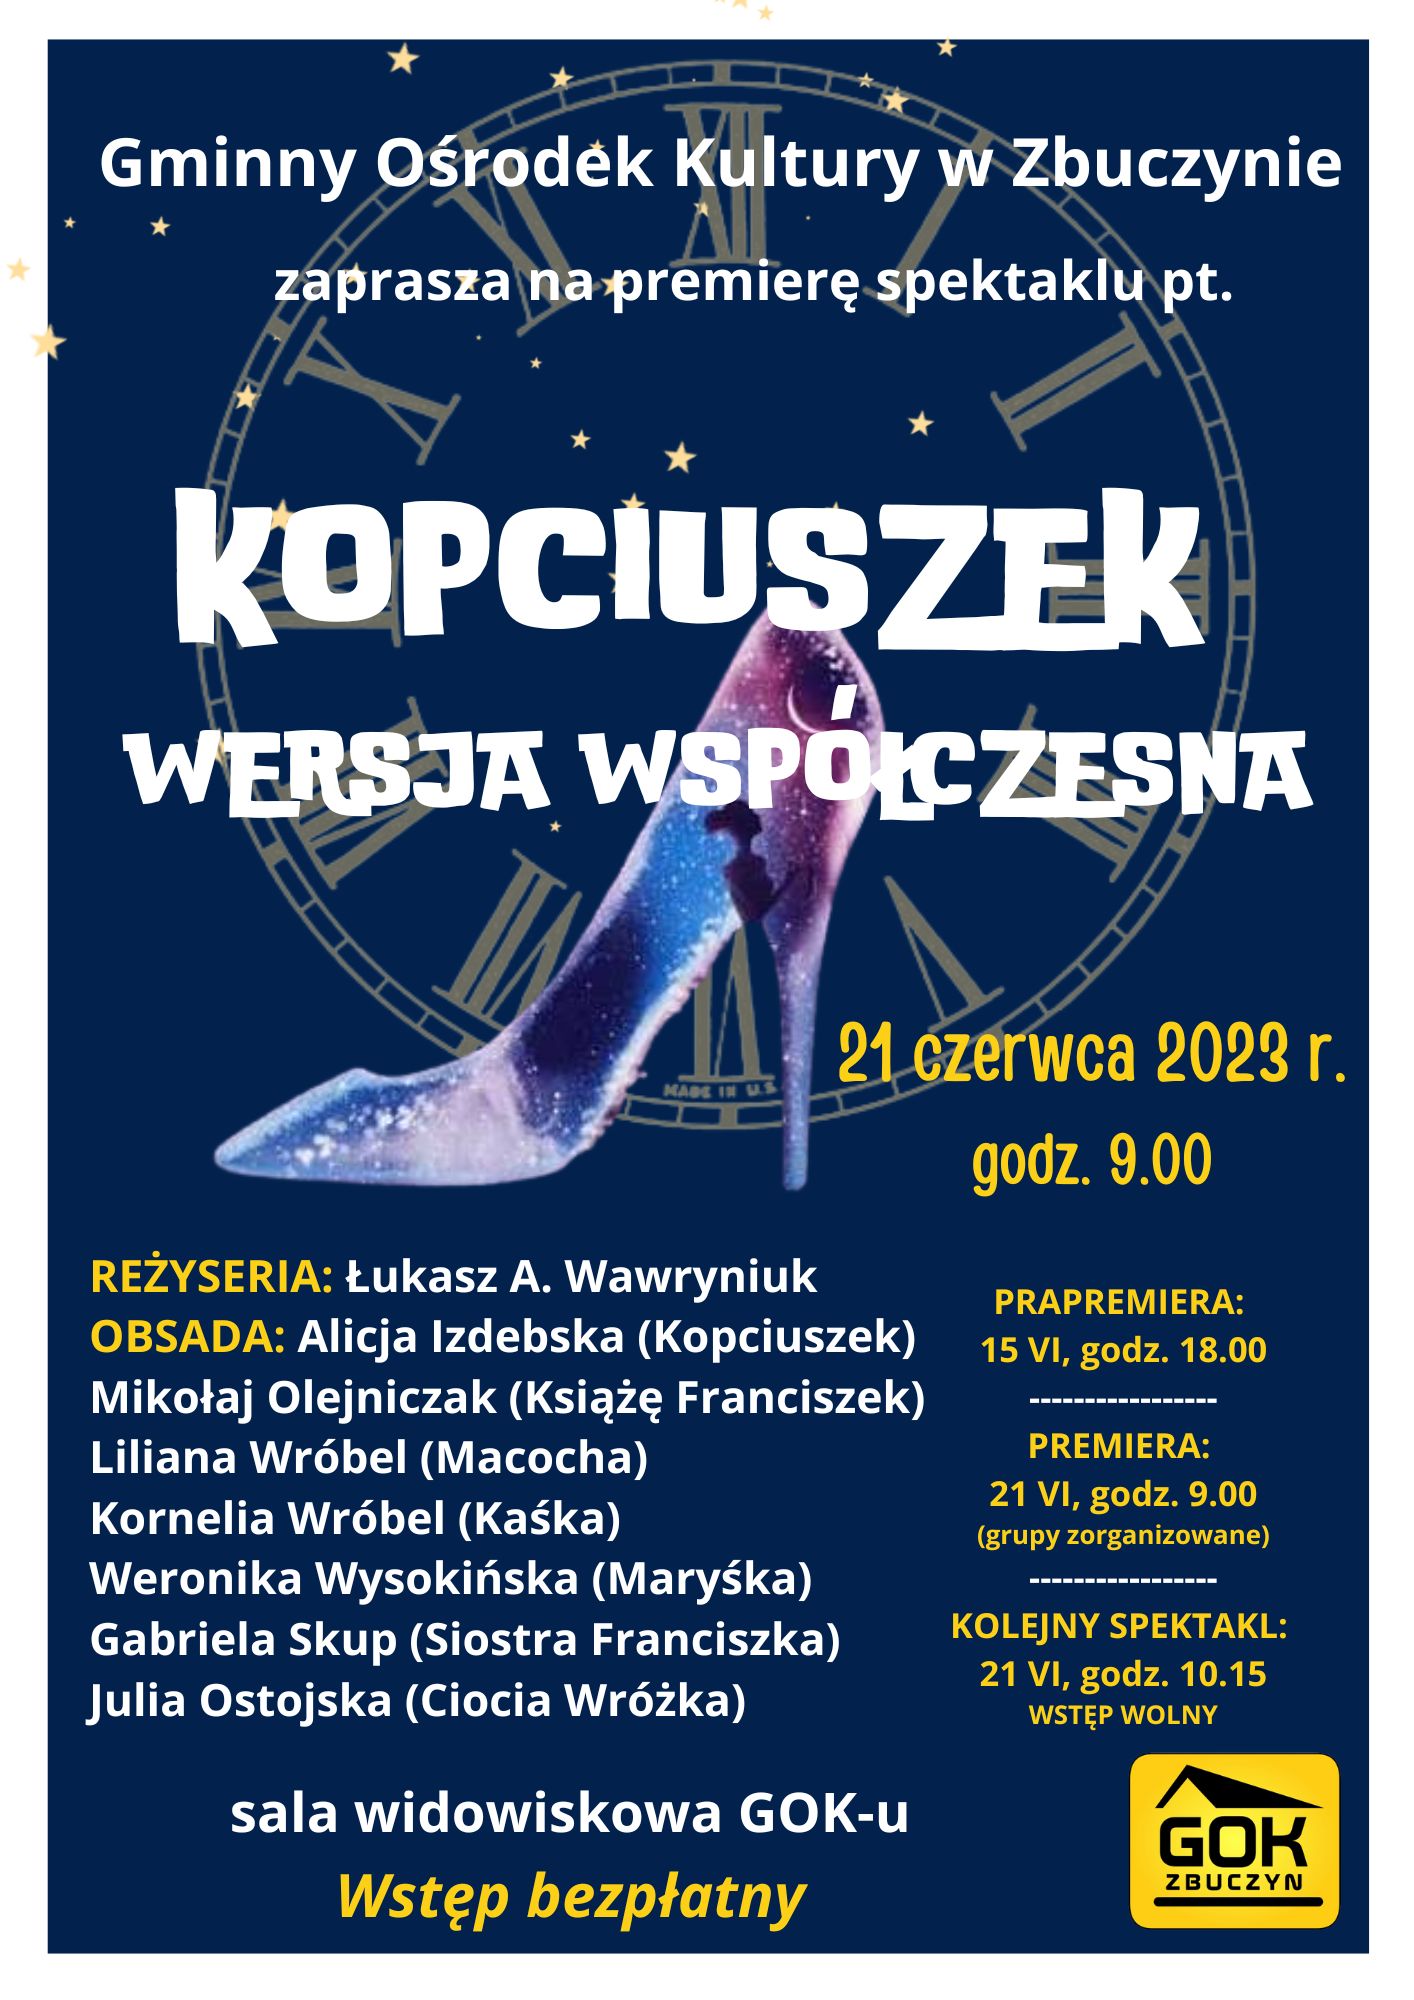 2023 GOK premiera spektaklu DzGT Kopcuszek